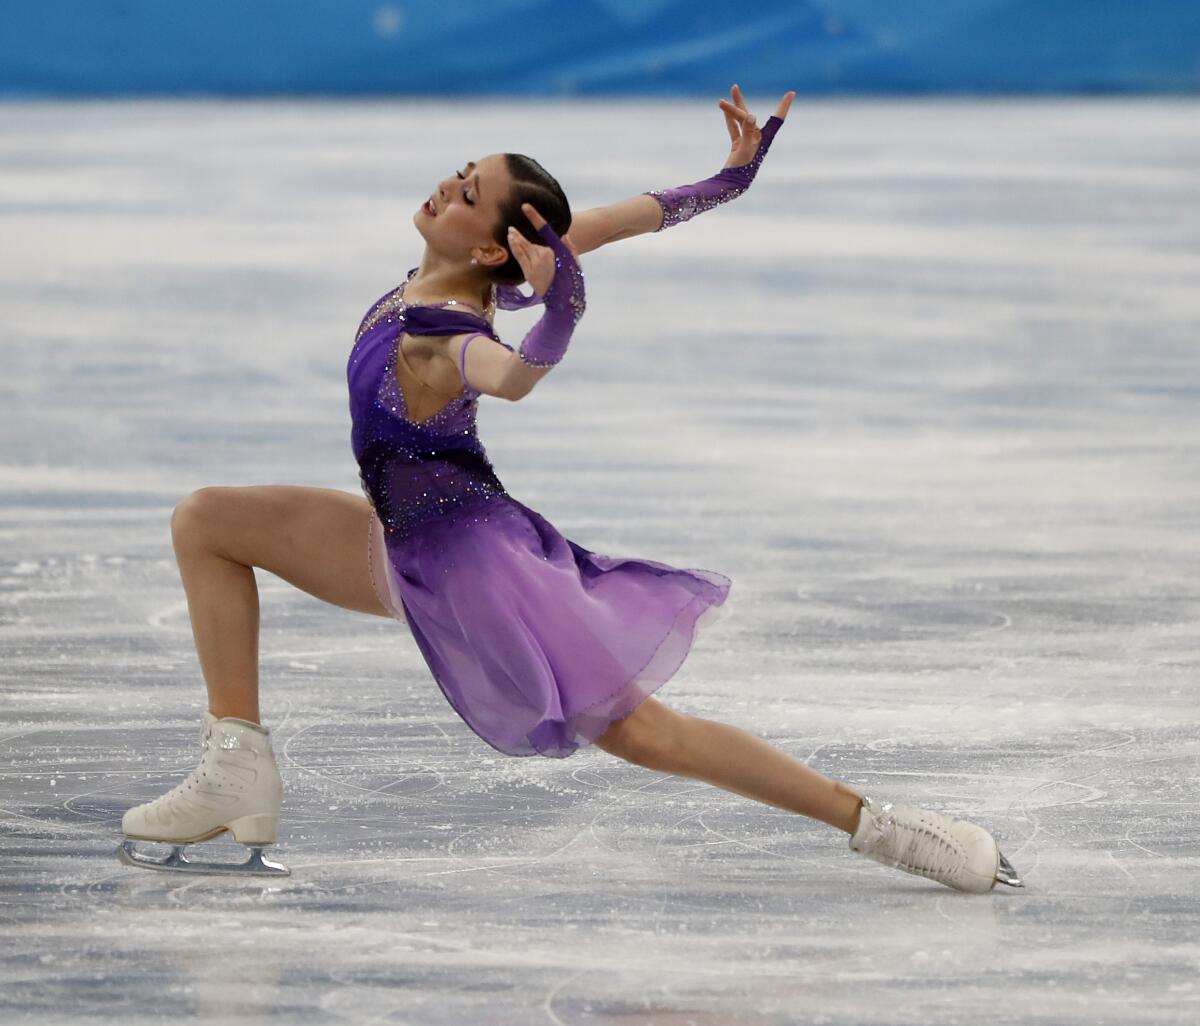 Kamila Valieva skates at the 2022 Olympics.